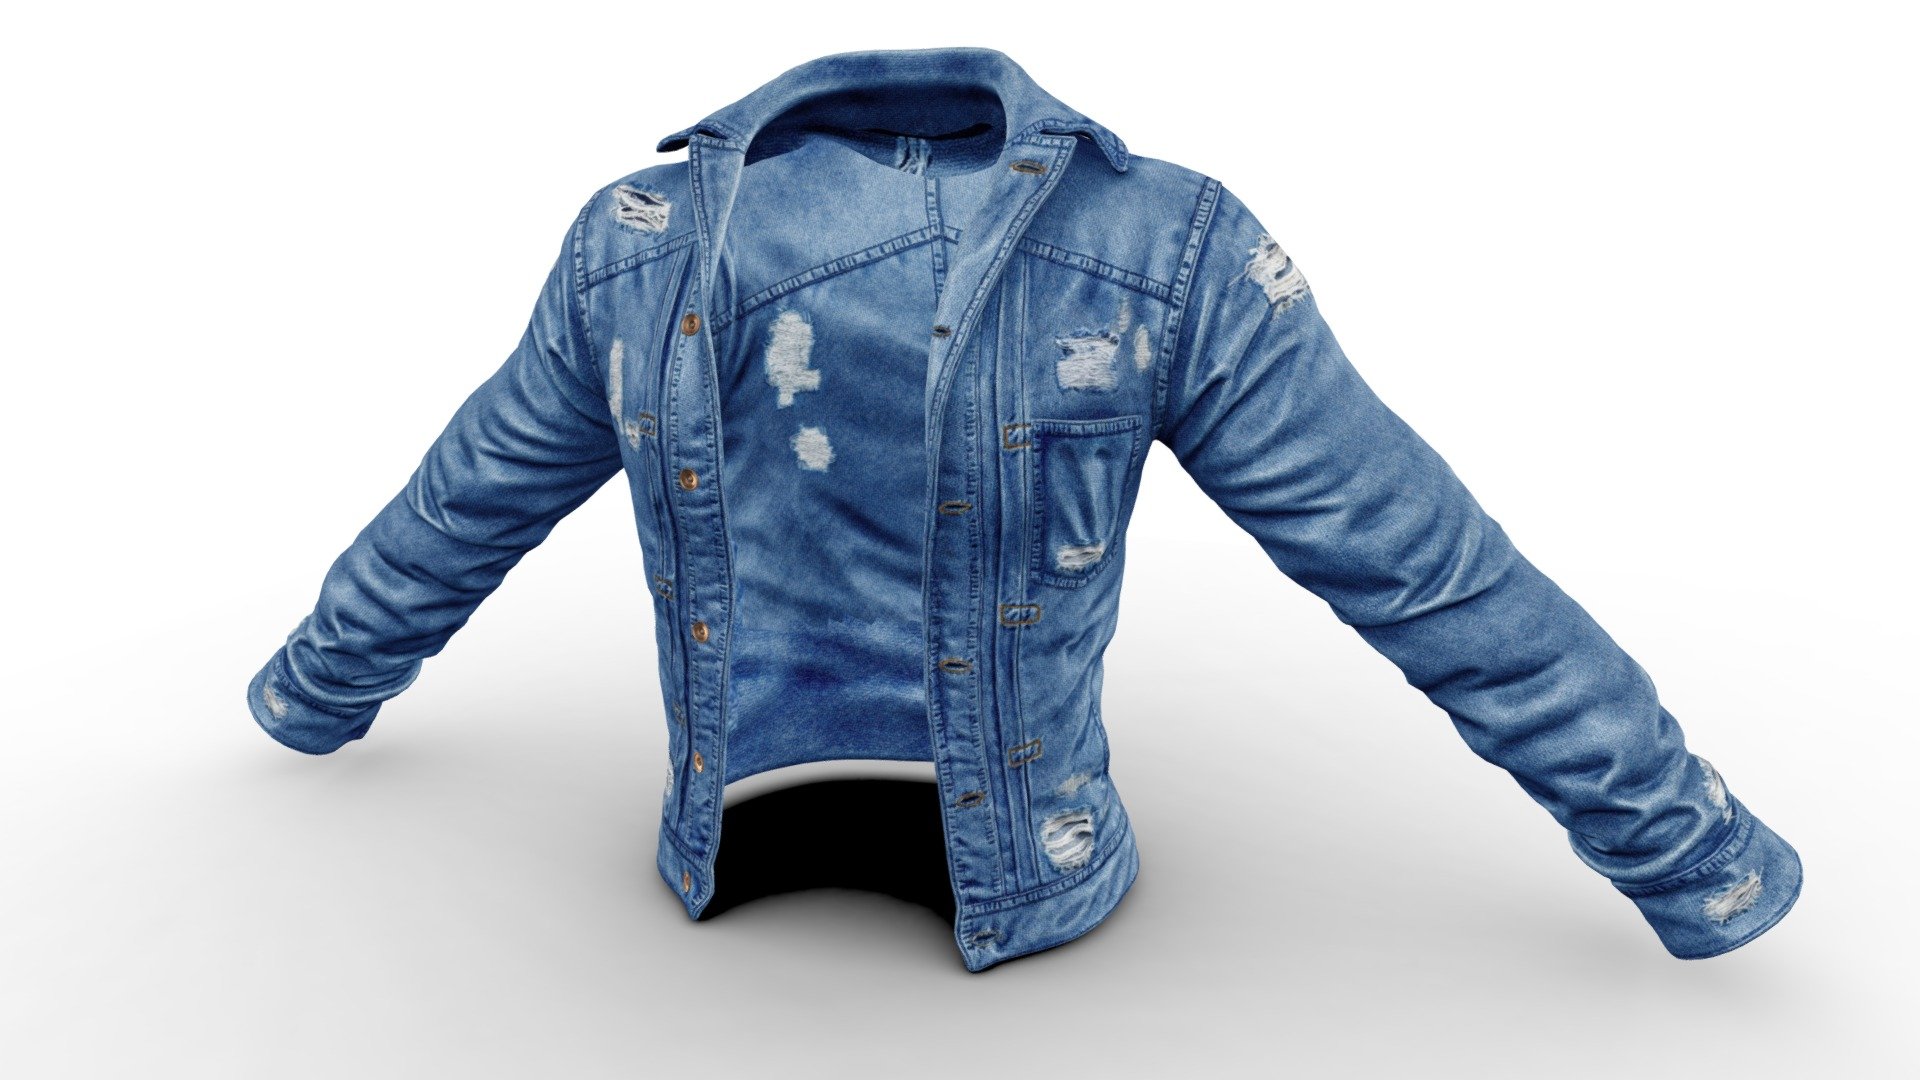 denim-jacket-3d-model-by-rajawali-rajawali1-cd10b34-sketchfab